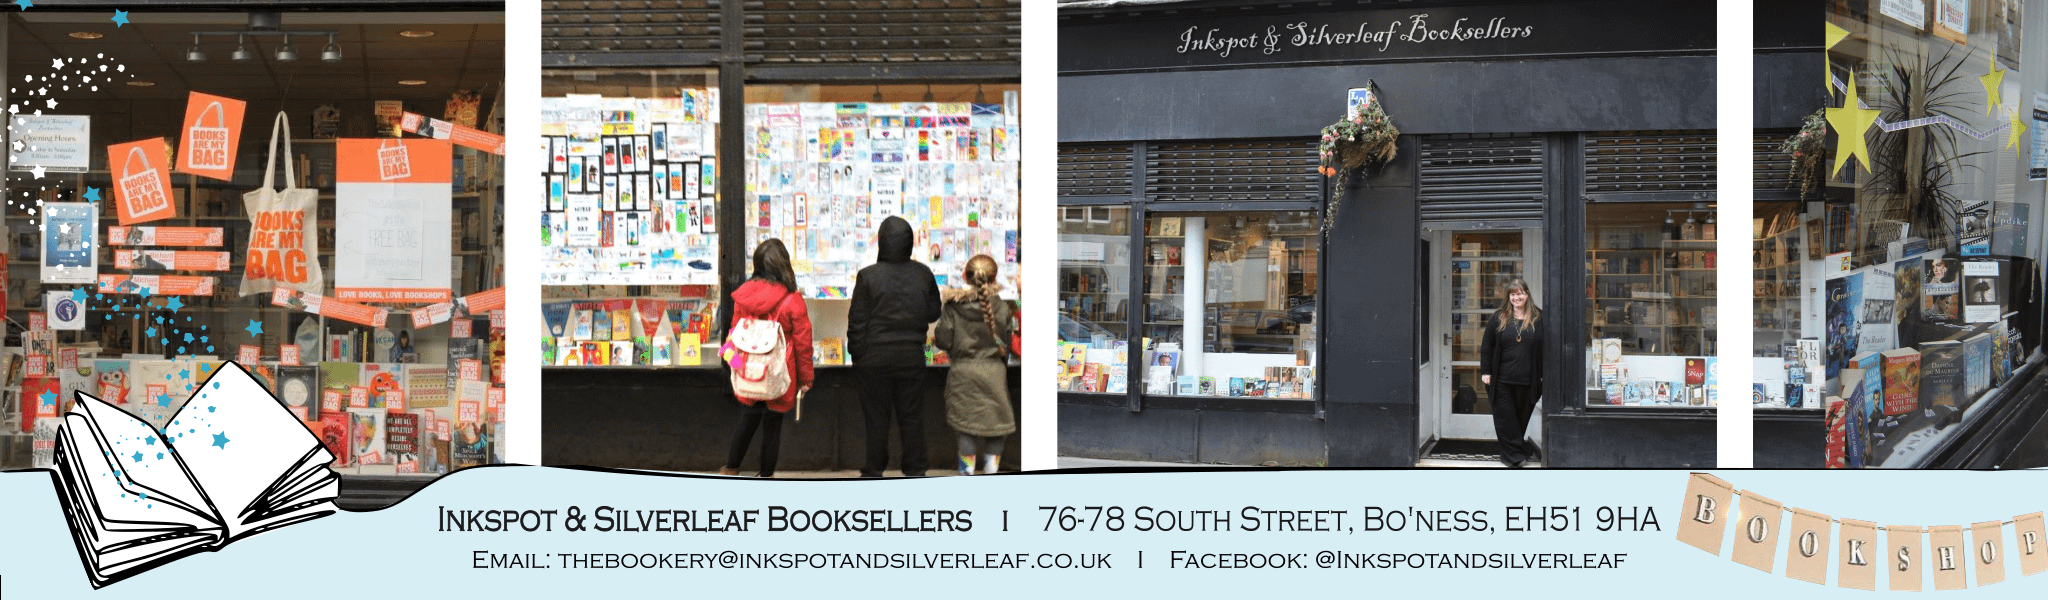 Inkspot & Silverleaf Booksellers, Bo'ness